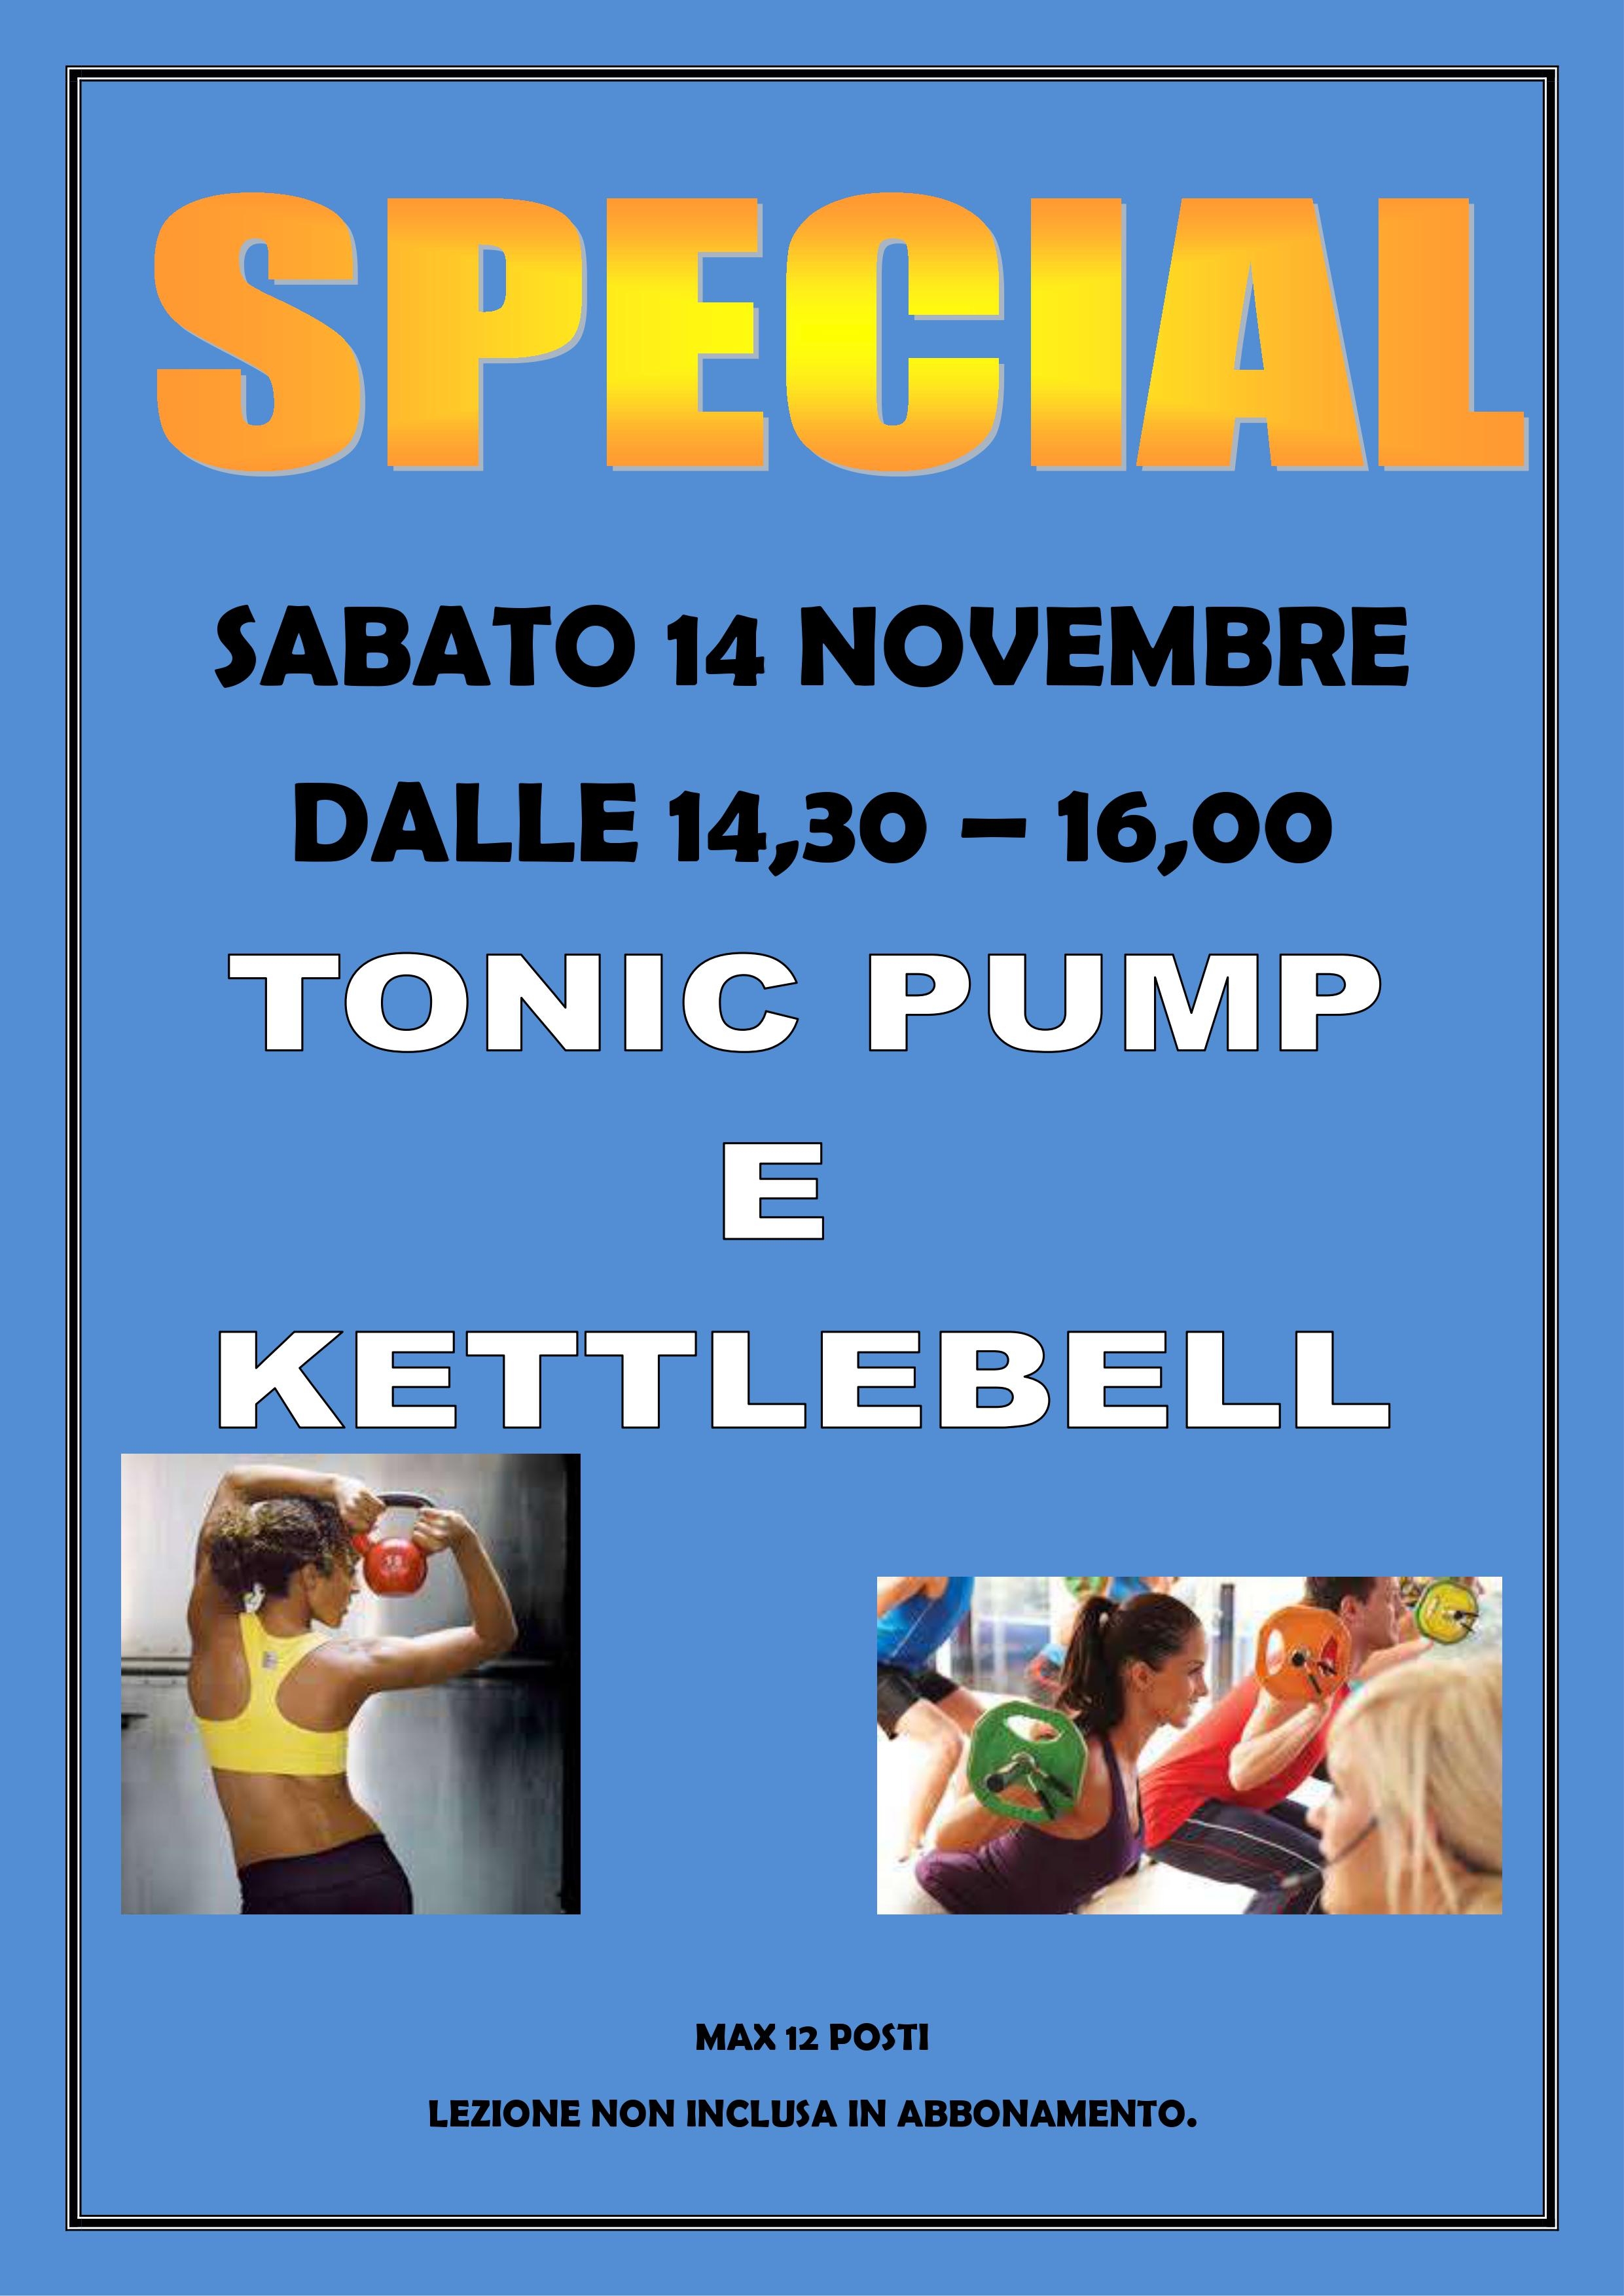 Tonic Pump - Kettlebell